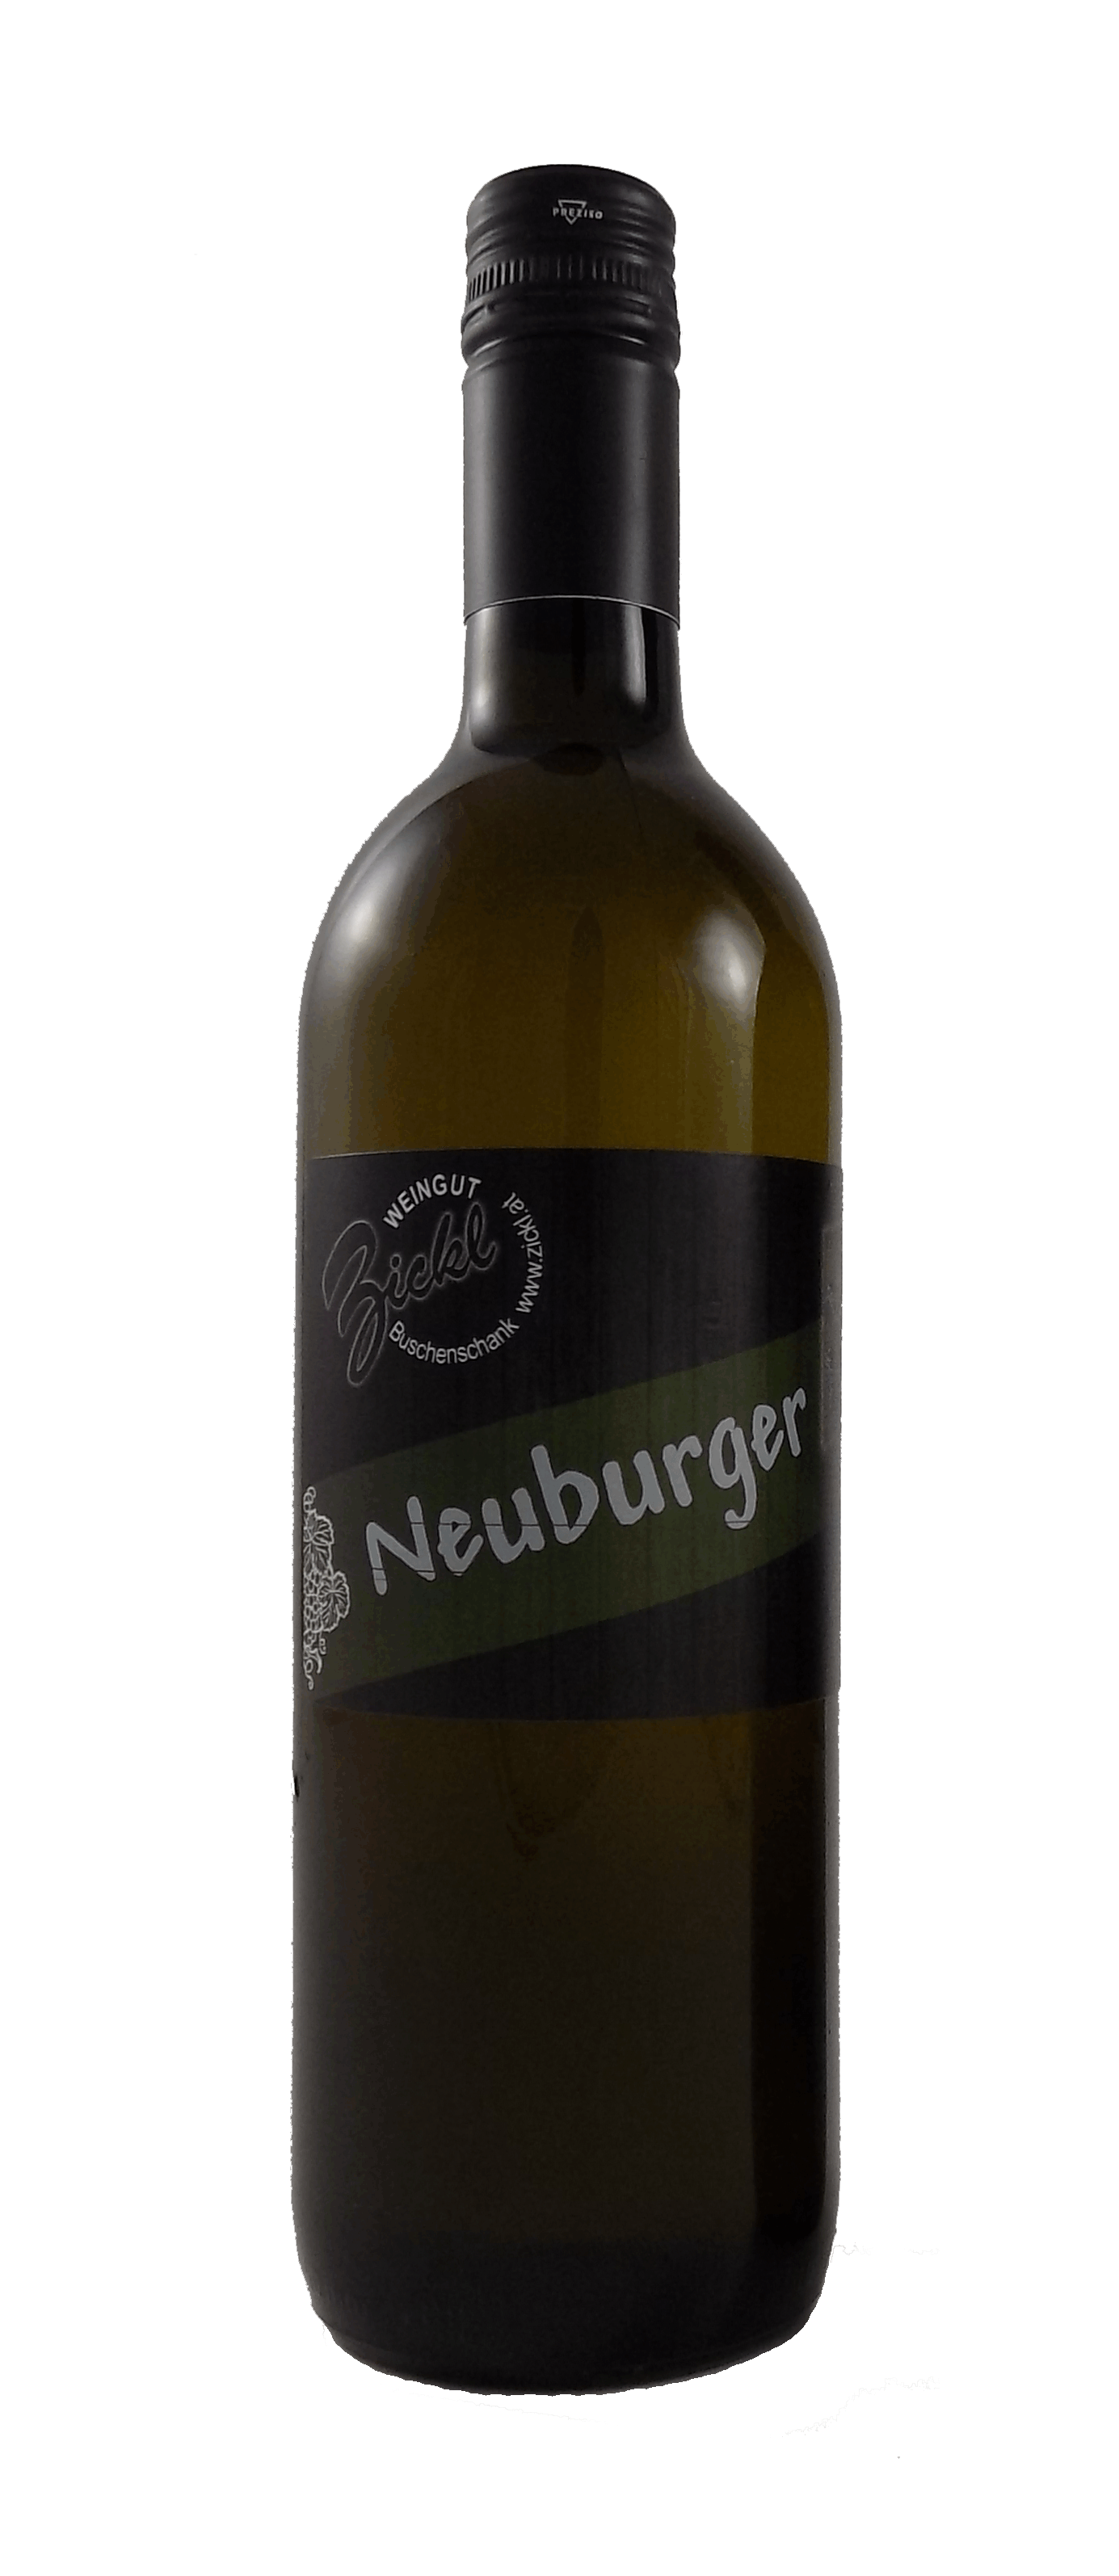 Neuburger halbtrocken aus dem Weingut Zickl